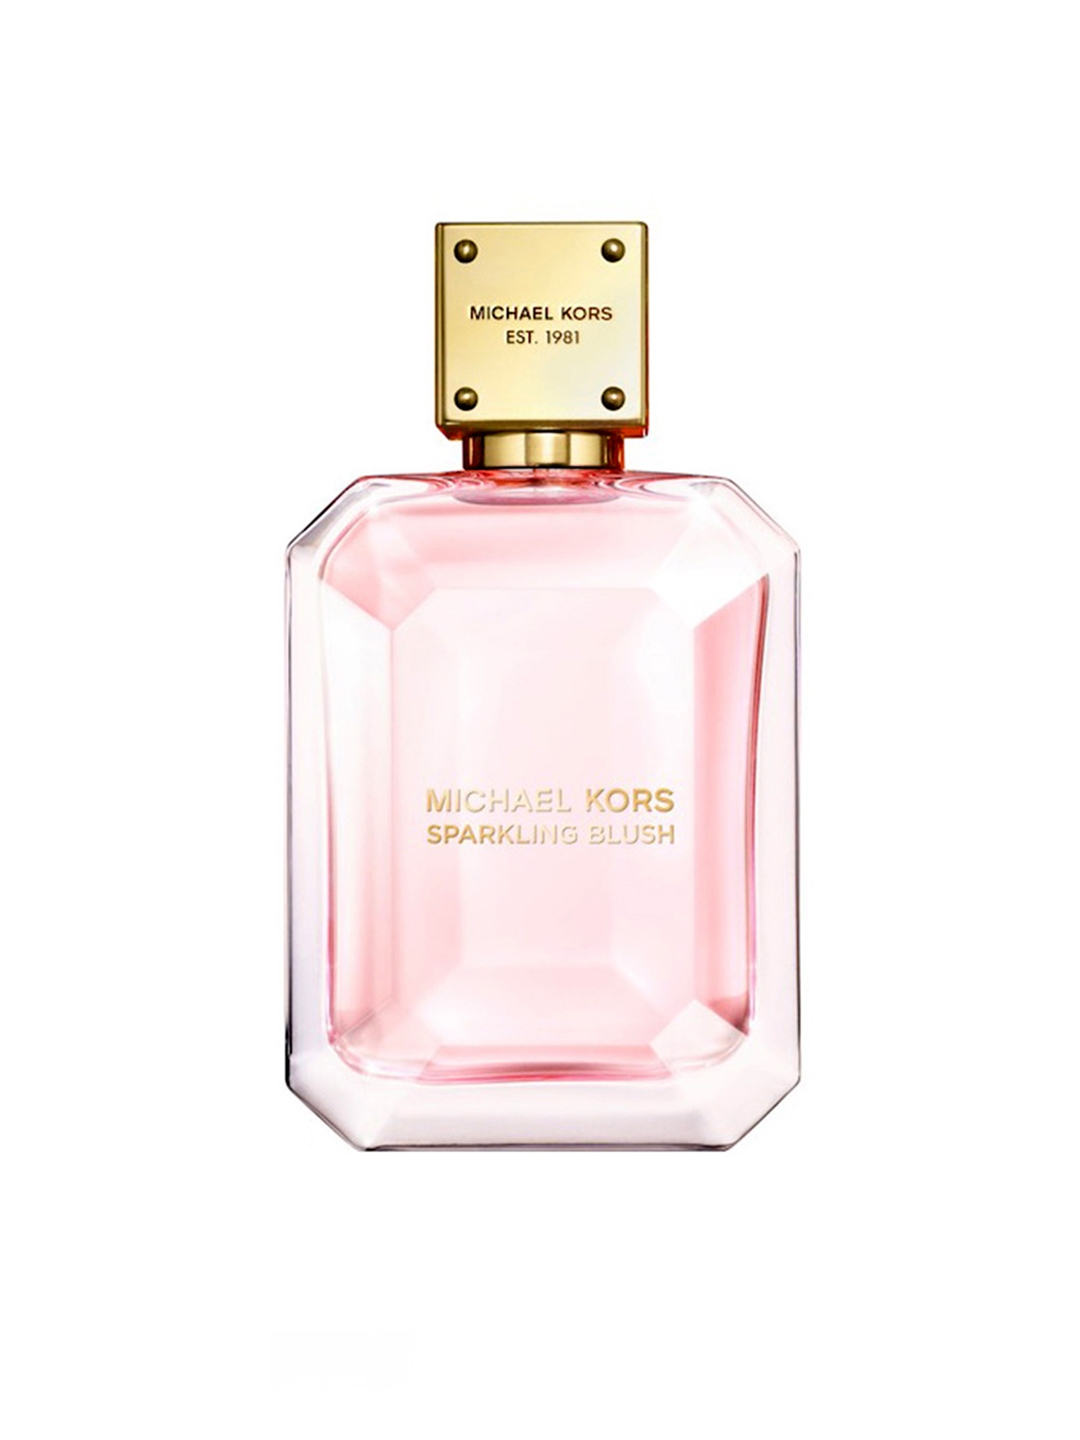 Michael Kors Sparkling Blush for Women 10 oz Eau de Parfum Spray   Walmartcom